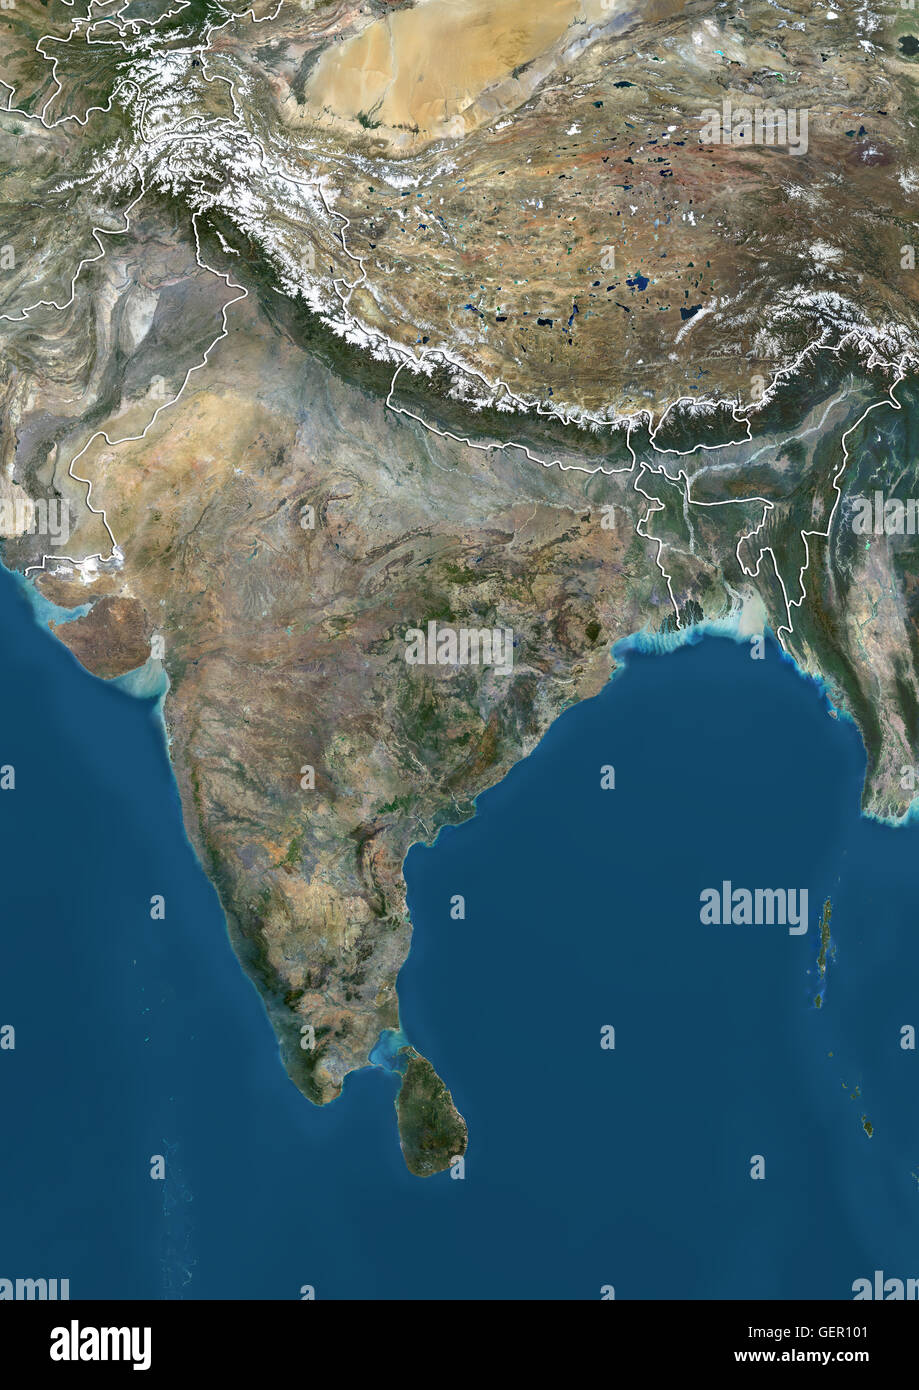 Vista satélite del subcontinente indio (con los límites del país), mostrando en la India en el centro y los límites de las zonas en disputa de Jammu y Cachemira en la India. Esta imagen fue compilado a partir de los datos obtenidos por el satélite Landsat 8 en 2014. Foto de stock